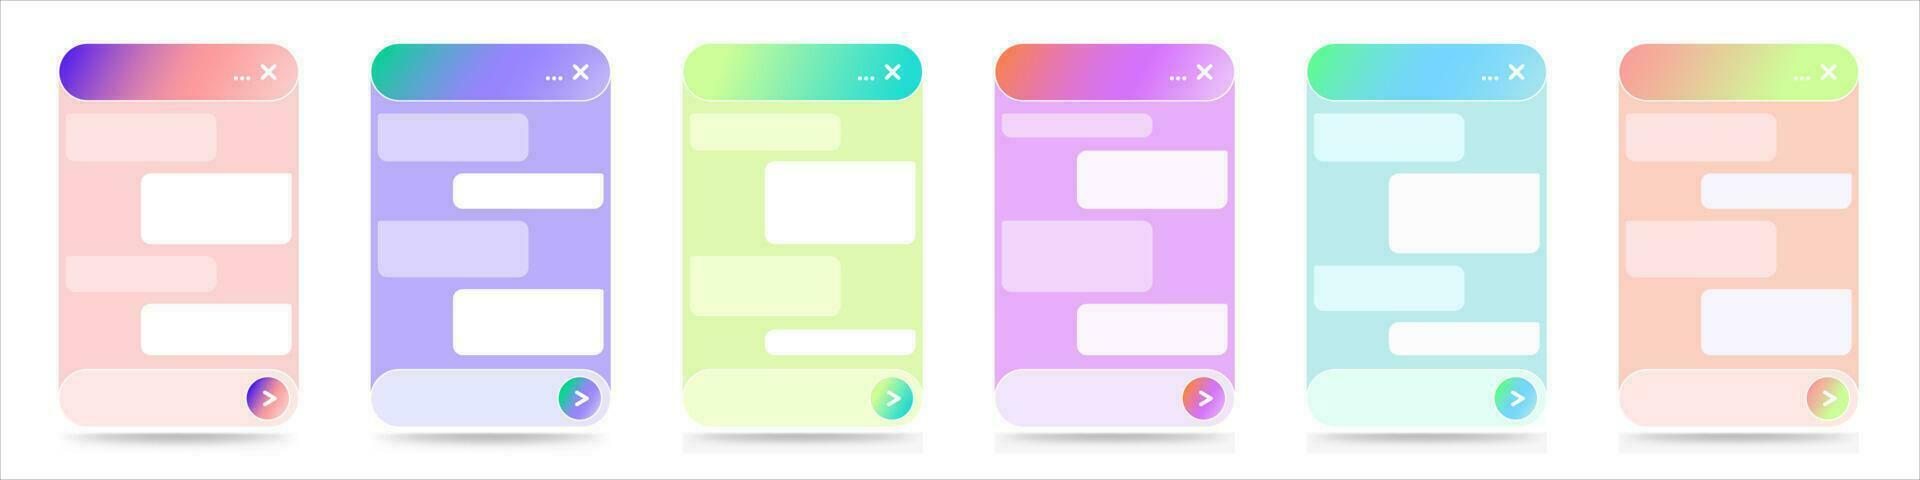 en uppsättning av chatbot dialog fönster gränssnitt för webbplatser och mobil applikationer. uppkopplad leva chatt app och virtuell assistent med gradienter av ljus färger. vektor design isolerat på en vit